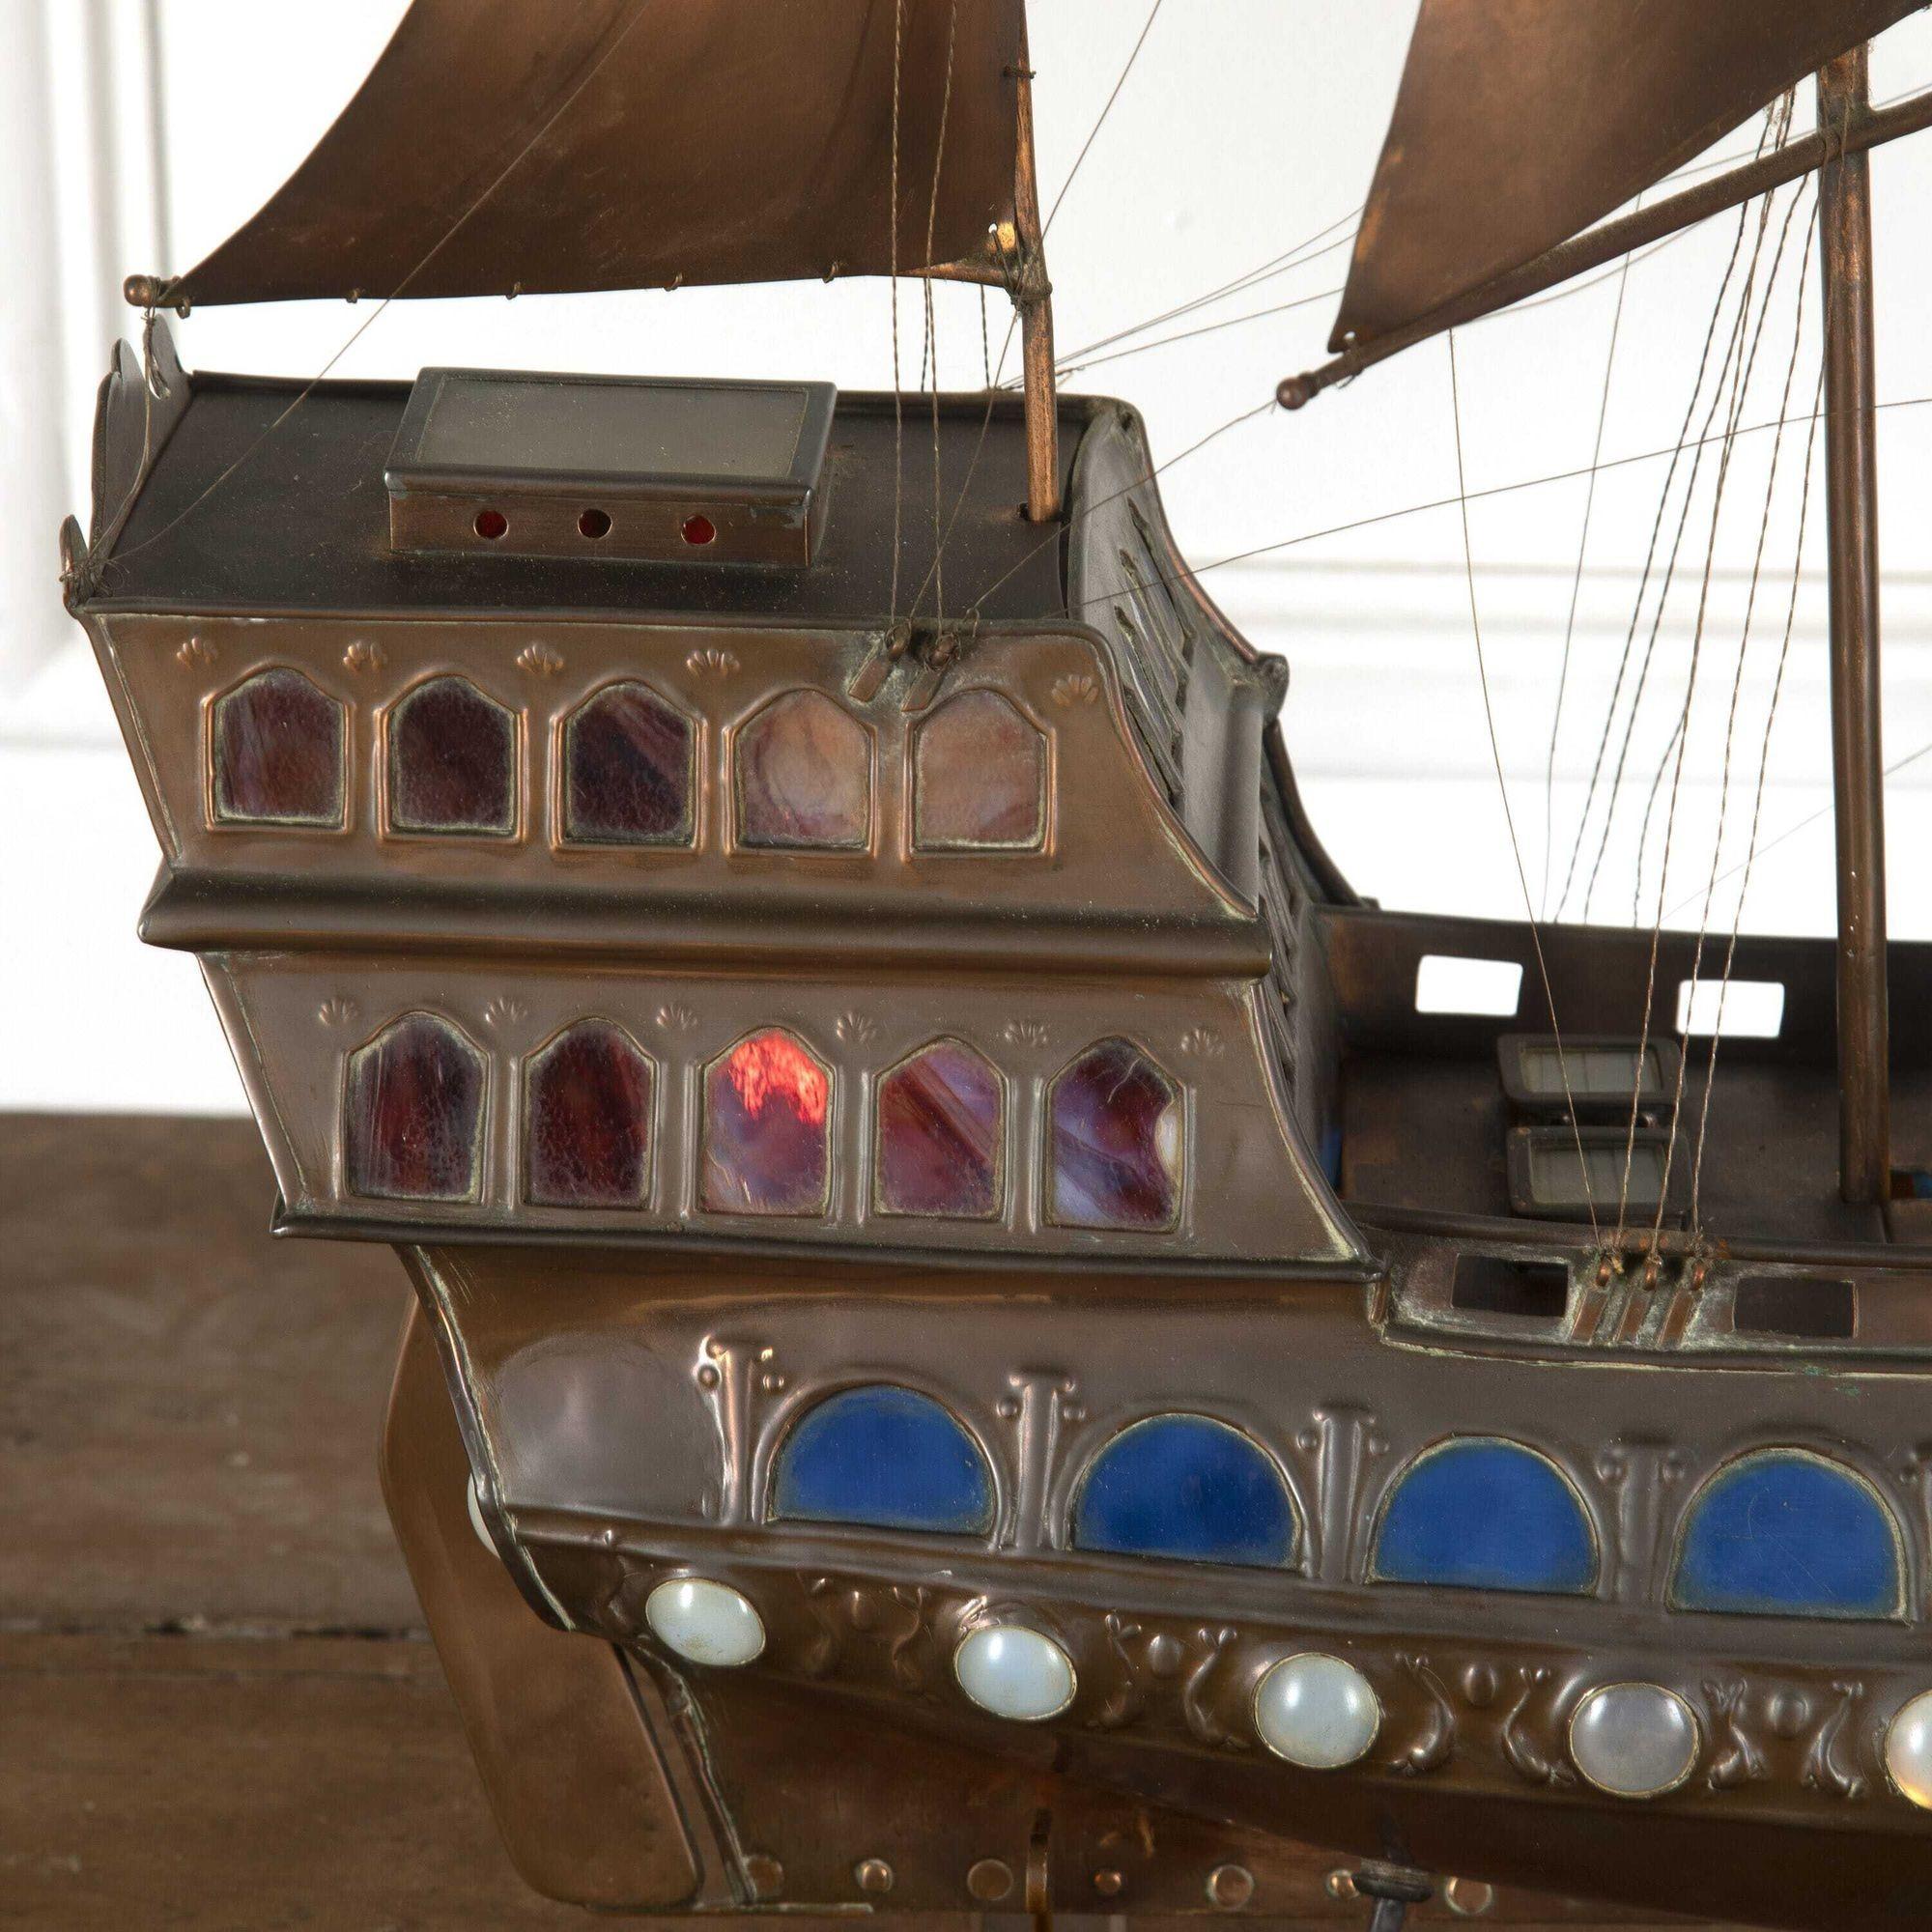 Extraordinaire galion de cuivre, attribué à la Guilde de l'Artisanat. 
Ce superbe navire démontre comment les Arts & Crafts ont fait revivre les arts décoratifs et ont redonné une nouvelle dignité à l'artisan dans le sillage de la révolution